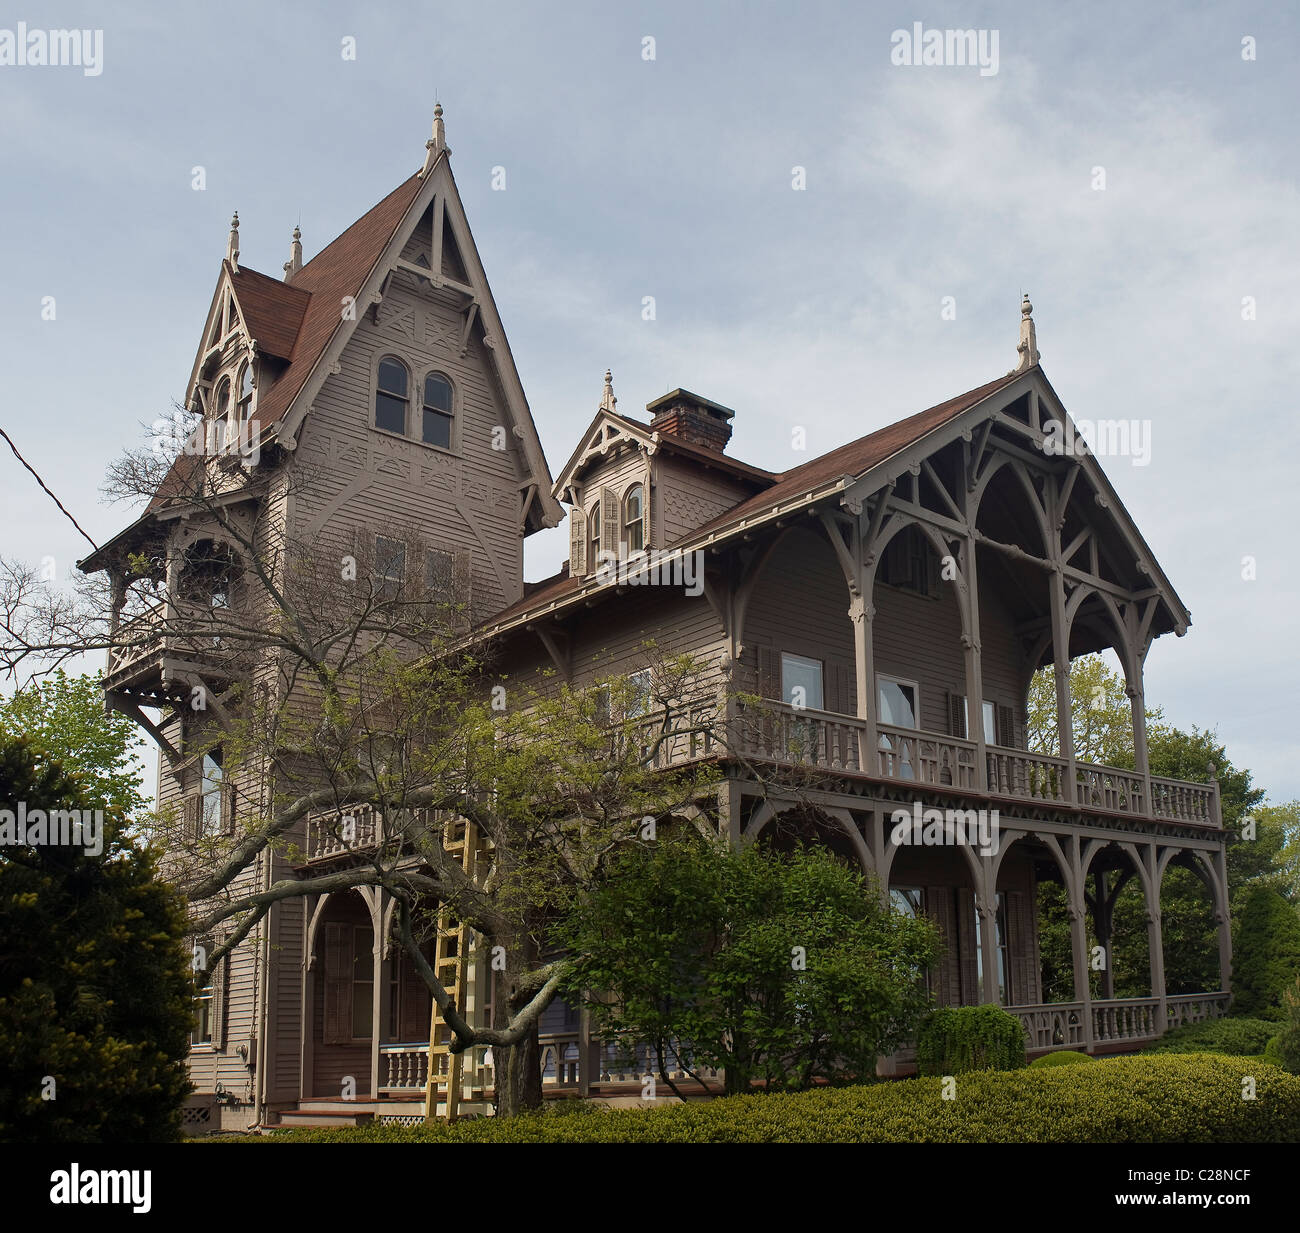 Casa victoriana gótica fotografías e imágenes de alta resolución - Alamy